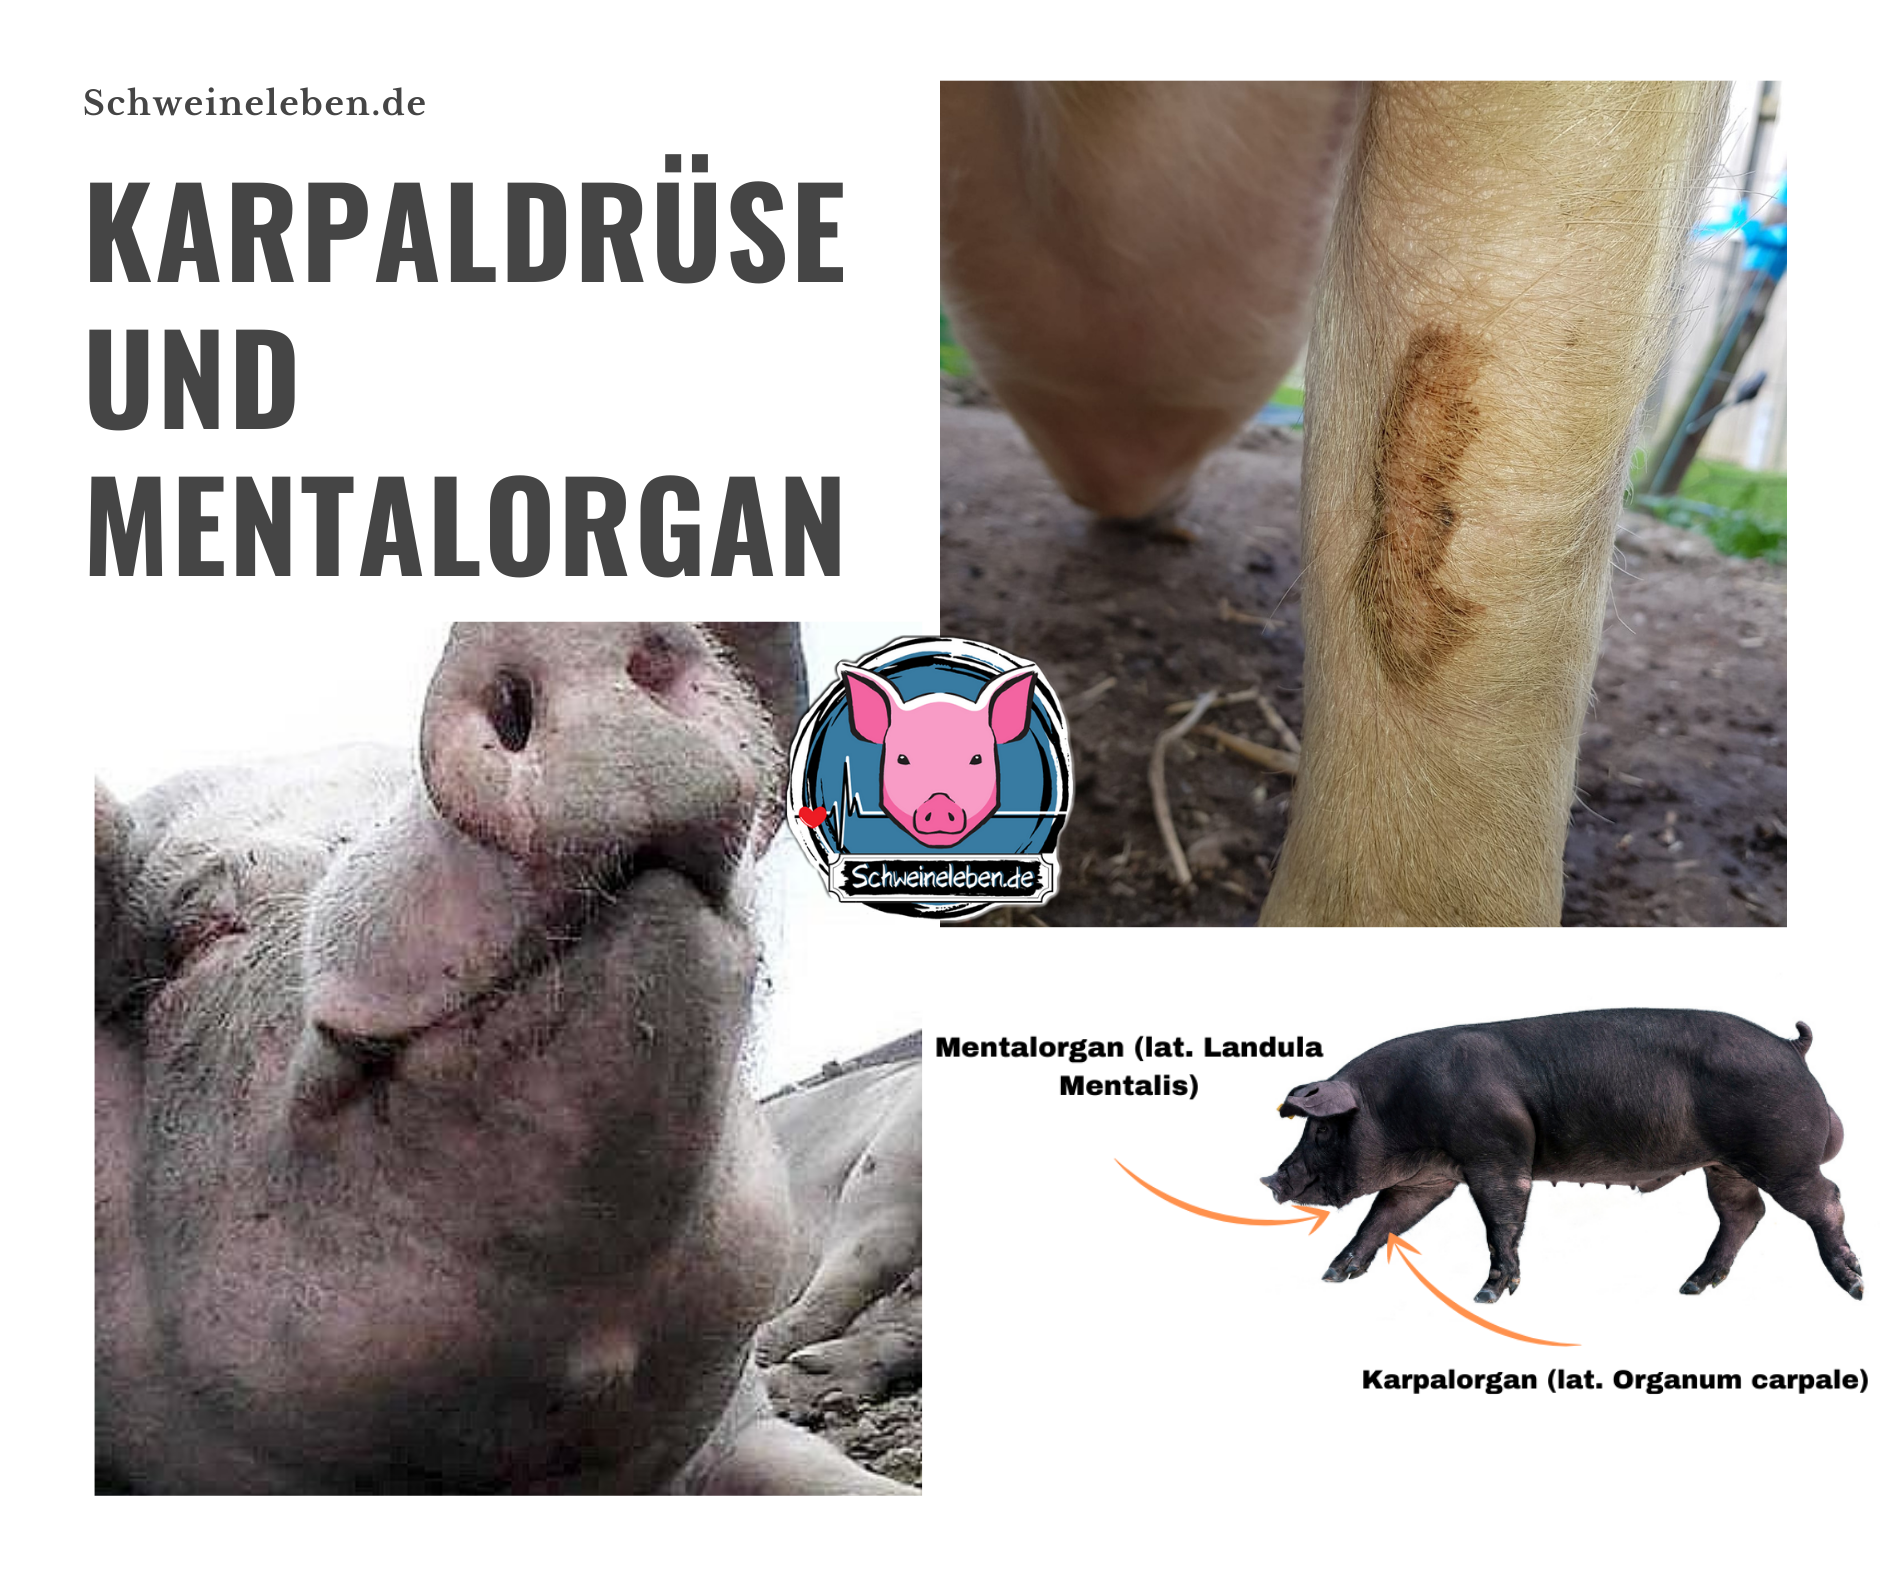 Karpaldrüsen und Mentalorgan beim Schwein